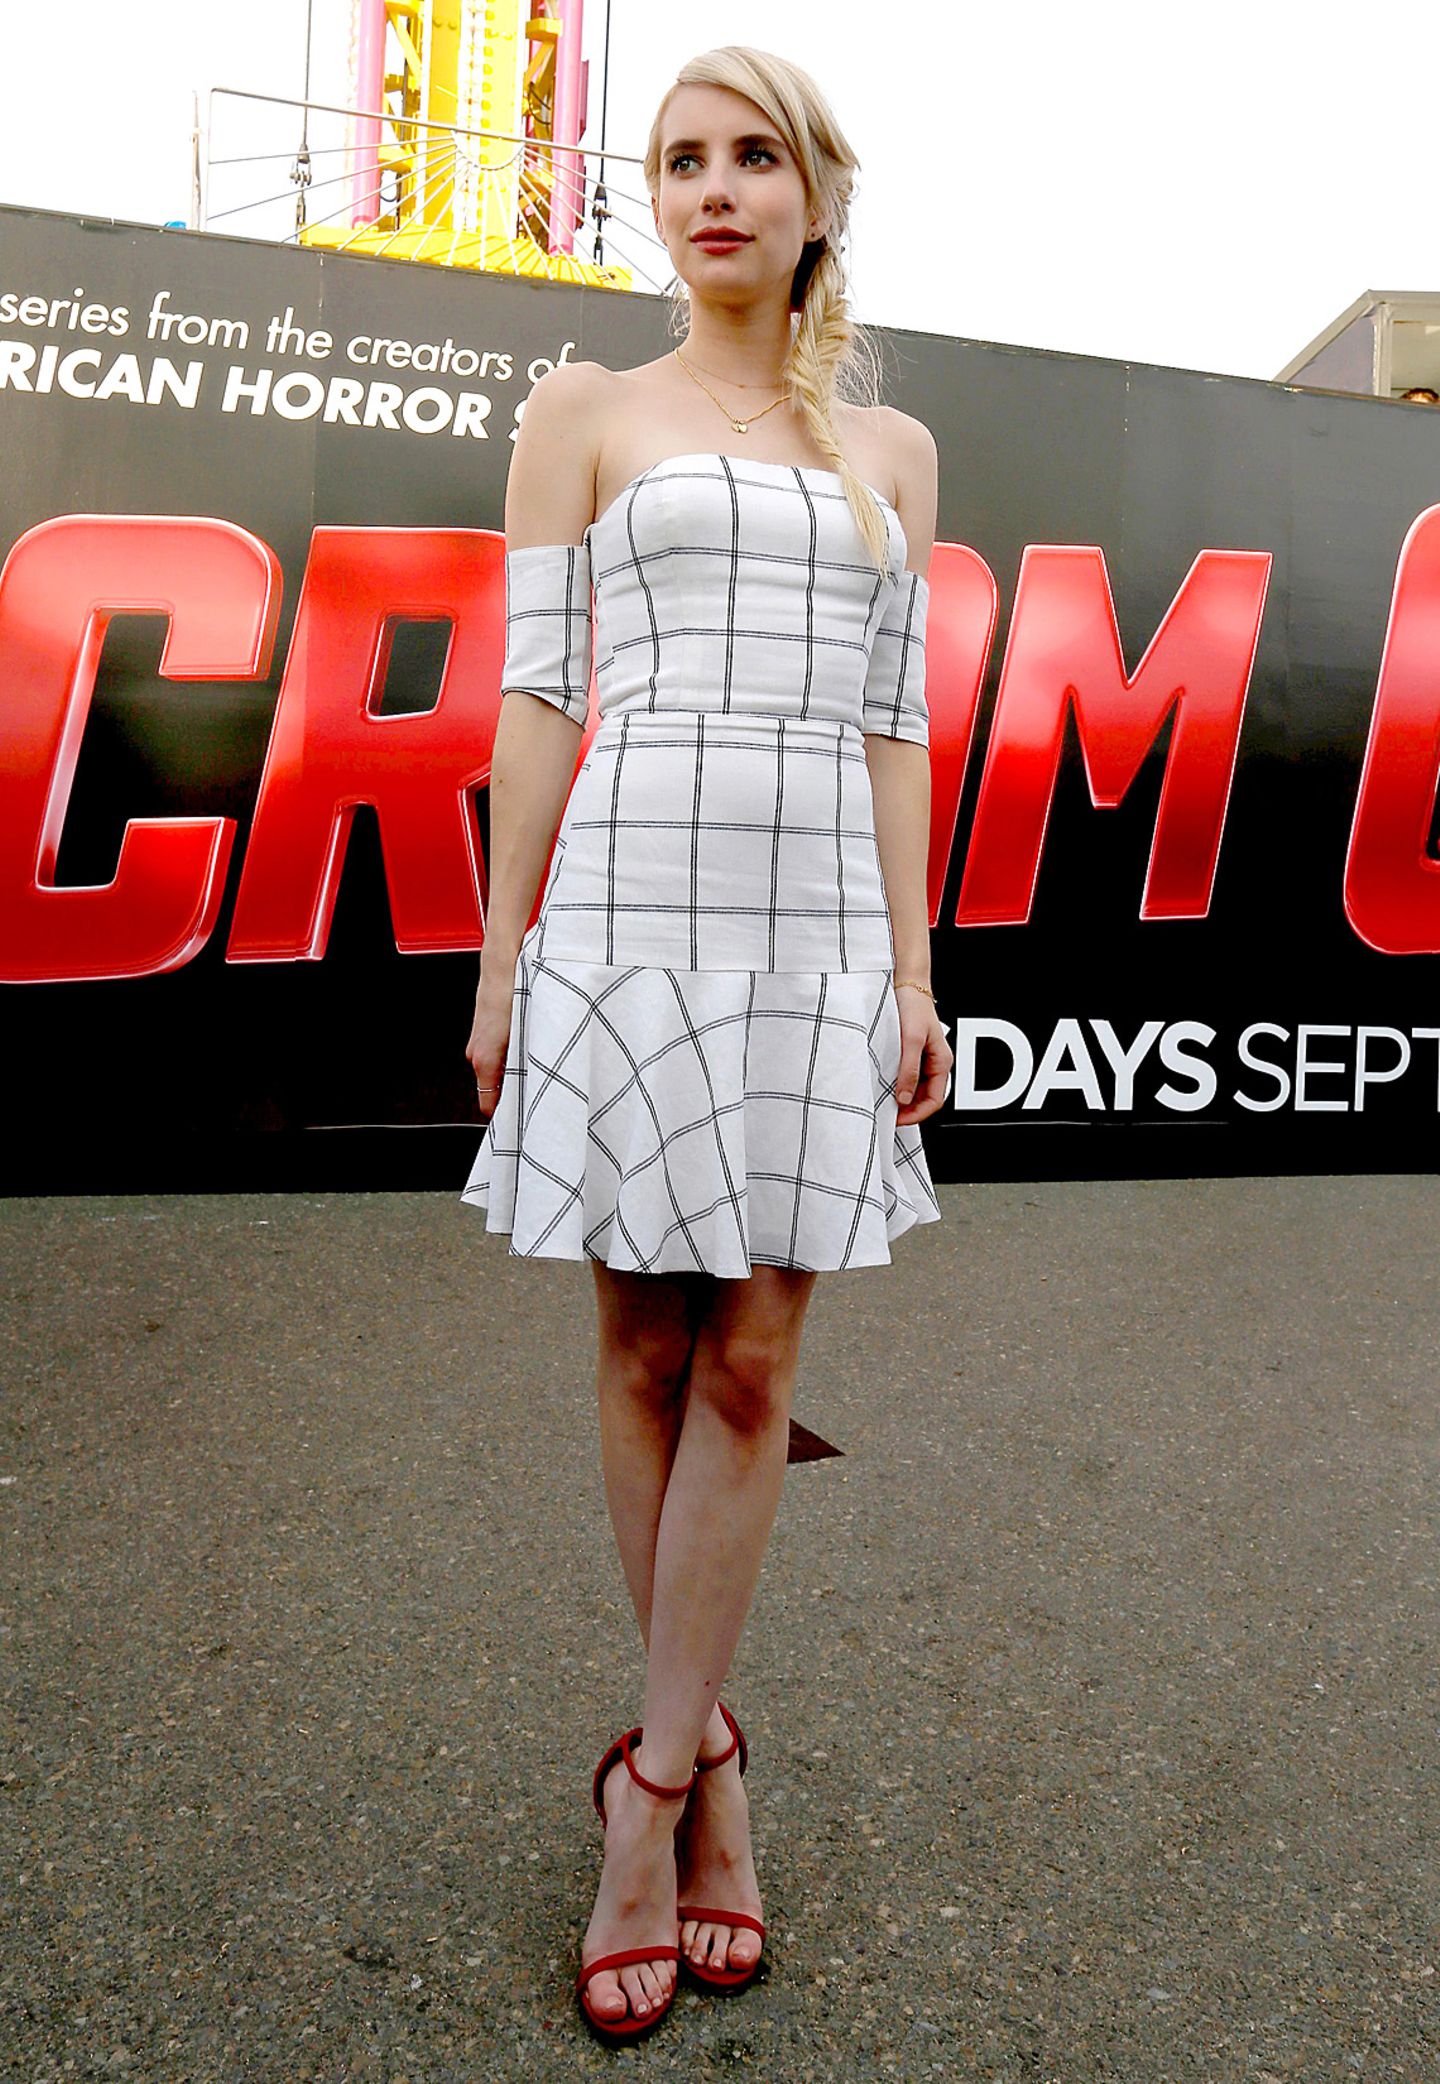 Großkariert: Emma Roberts präsentiert sich bei der Comic-Con u.a. in diesem schulterfreien Bustier-Kleid.